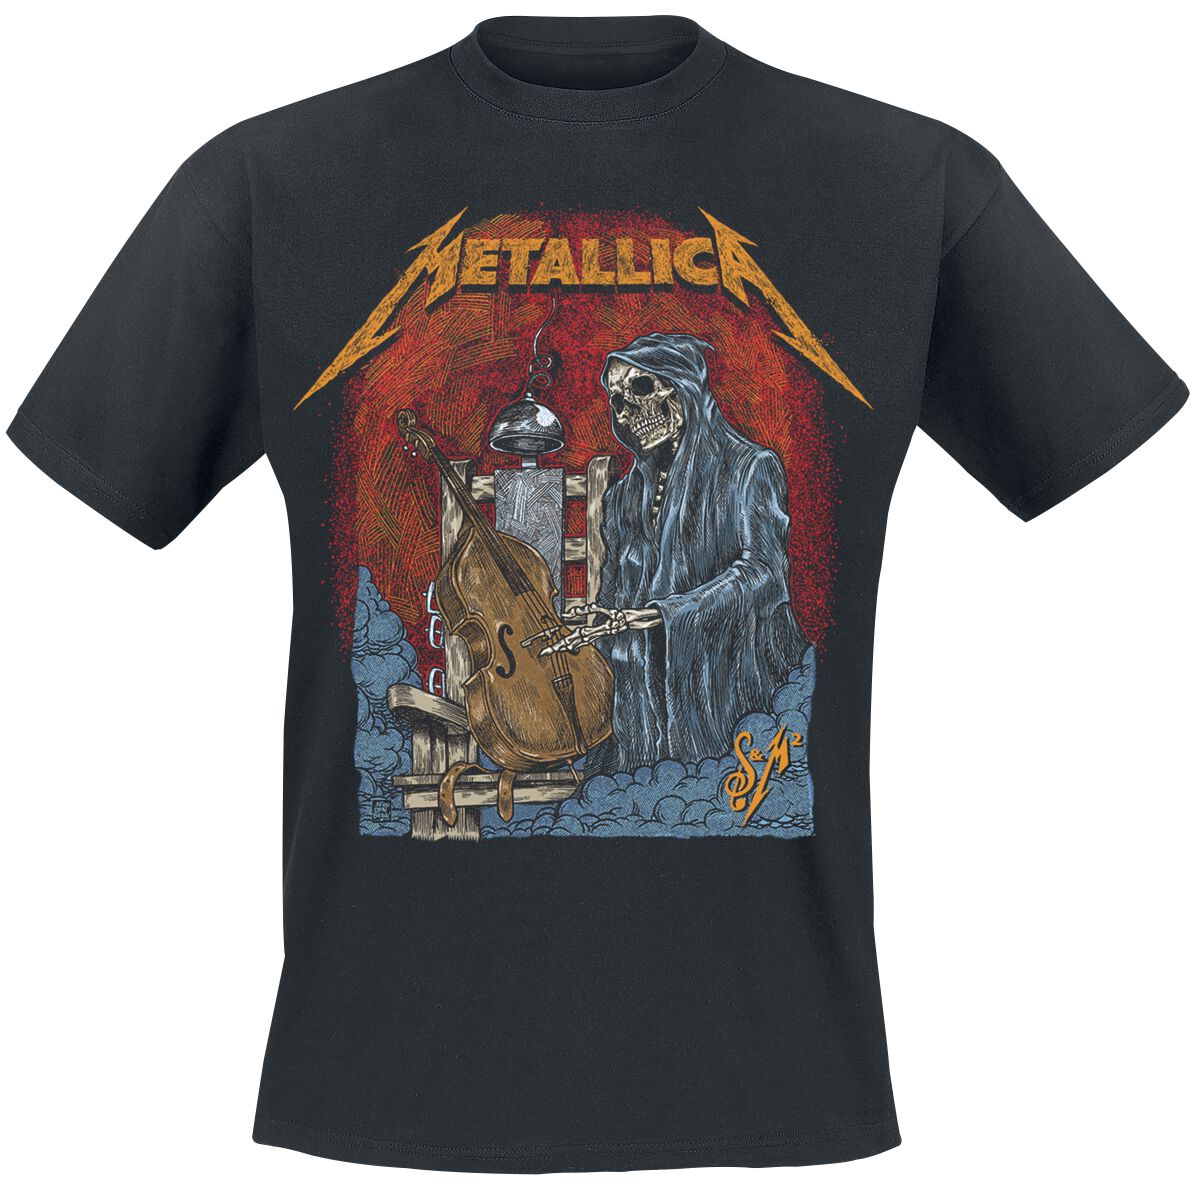 Metallica T-Shirt - S&M2 Cello Reaper - S bis 5XL - für Männer - Größe XXL - schwarz  - Lizenziertes Merchandise!